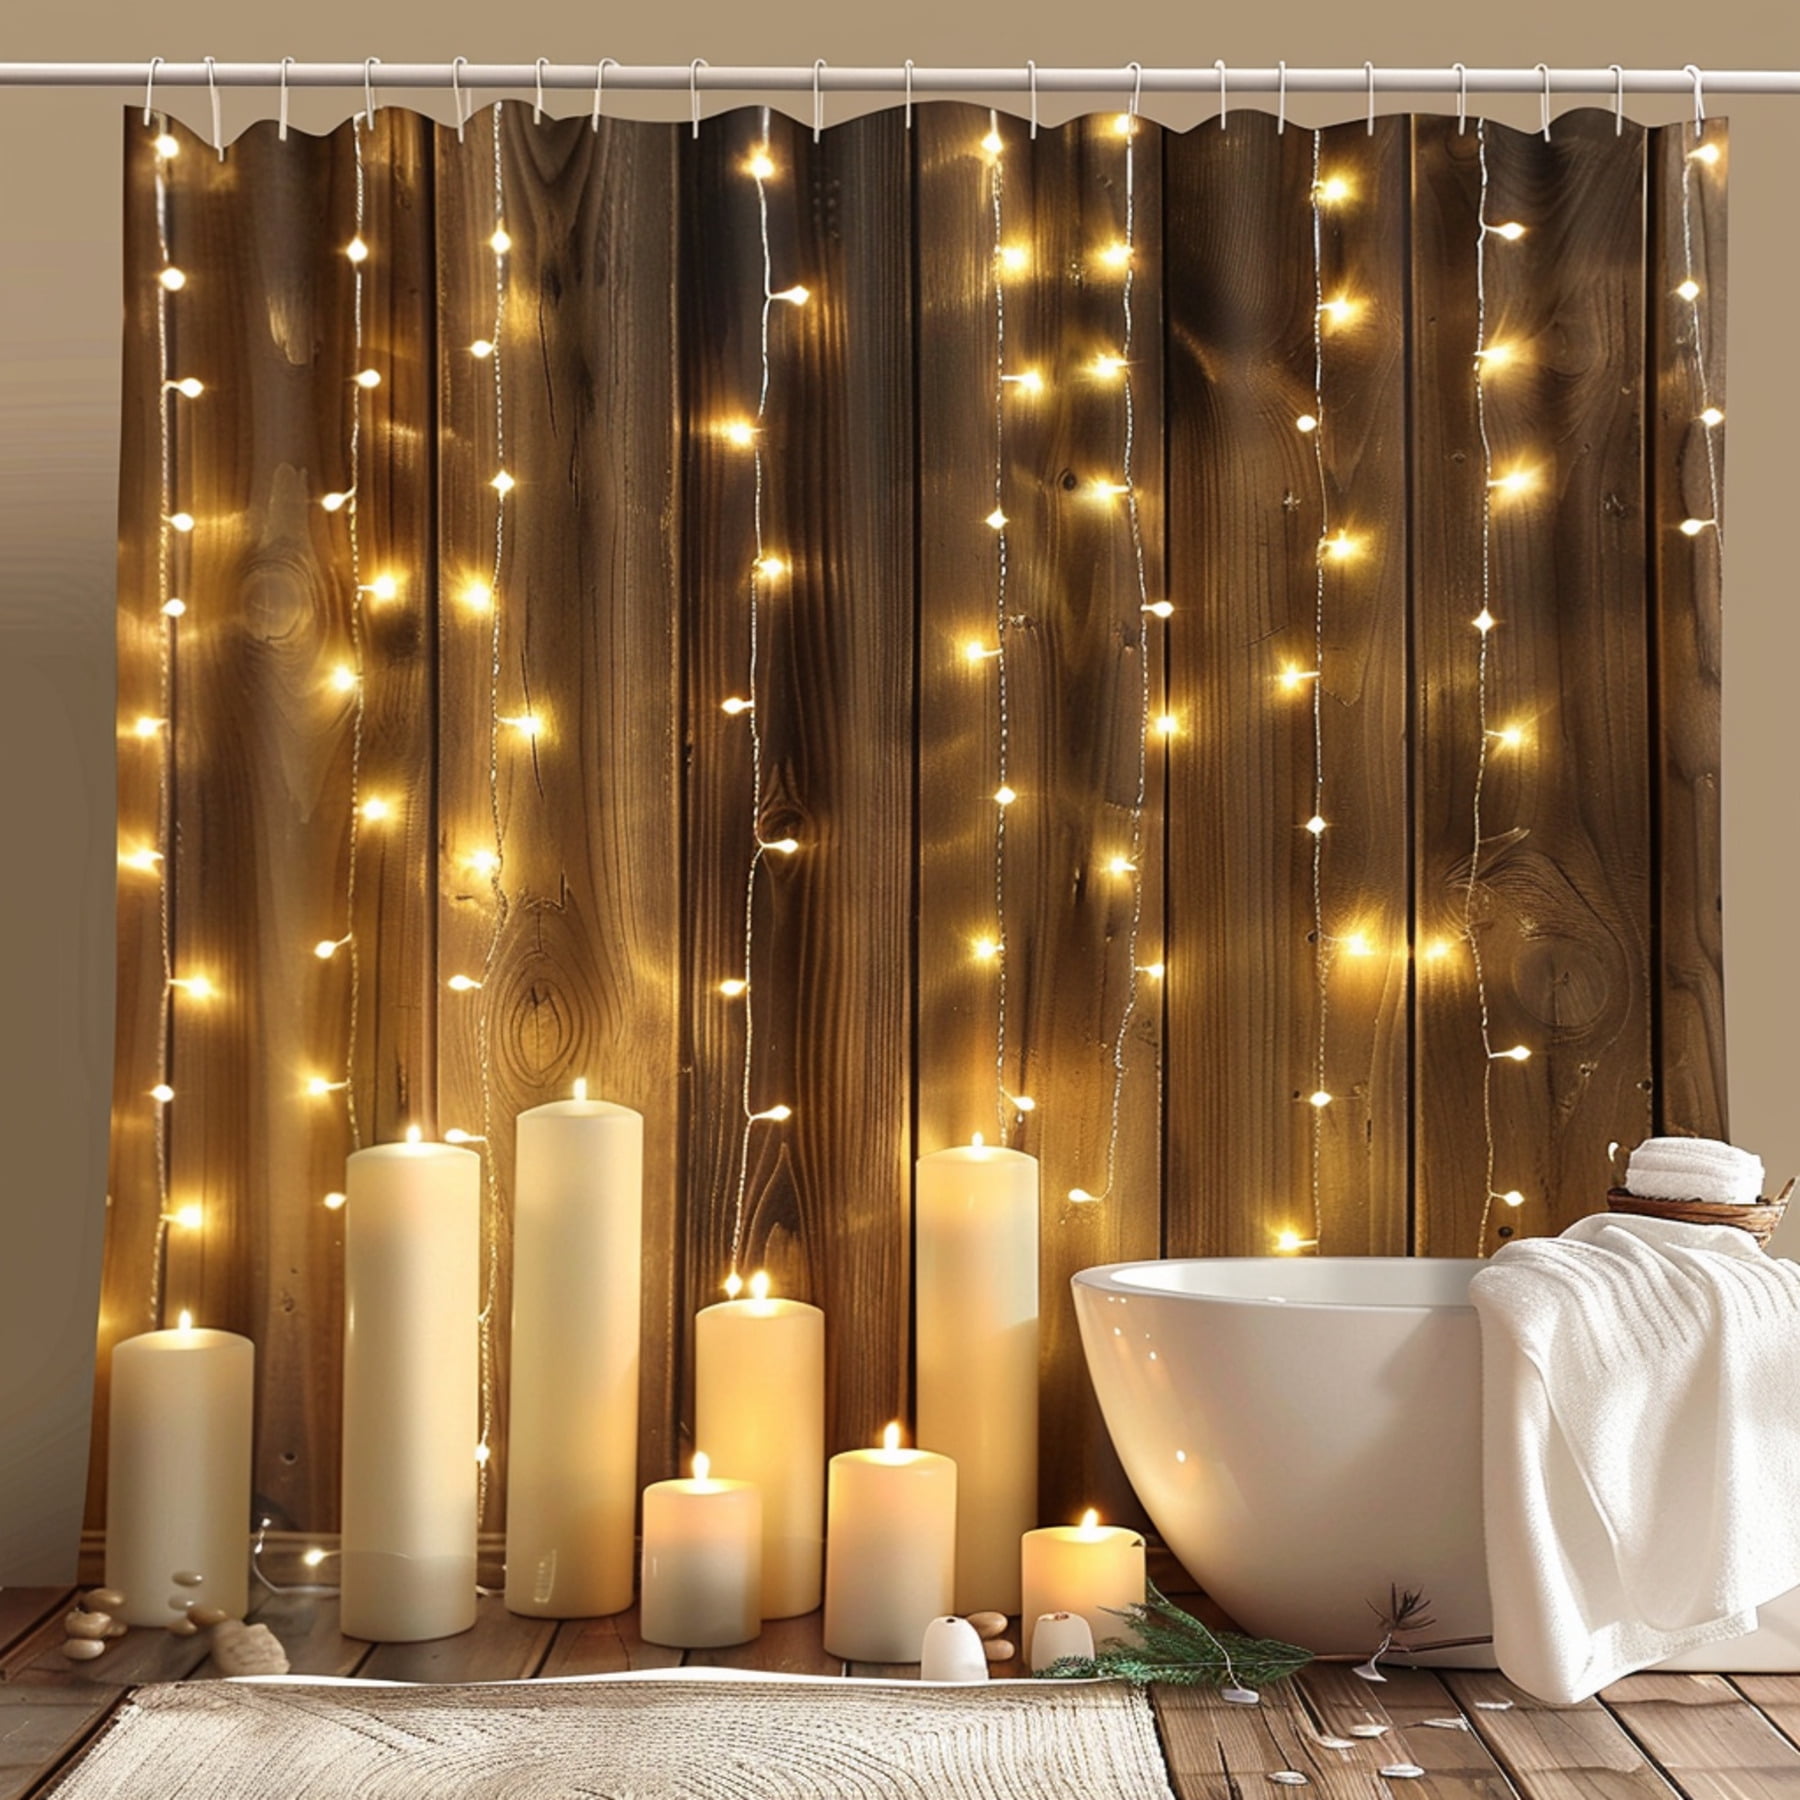 Enchanting Bathroom Ambiance Set: Rustic Wood Backdrop Candlelit Glow ...